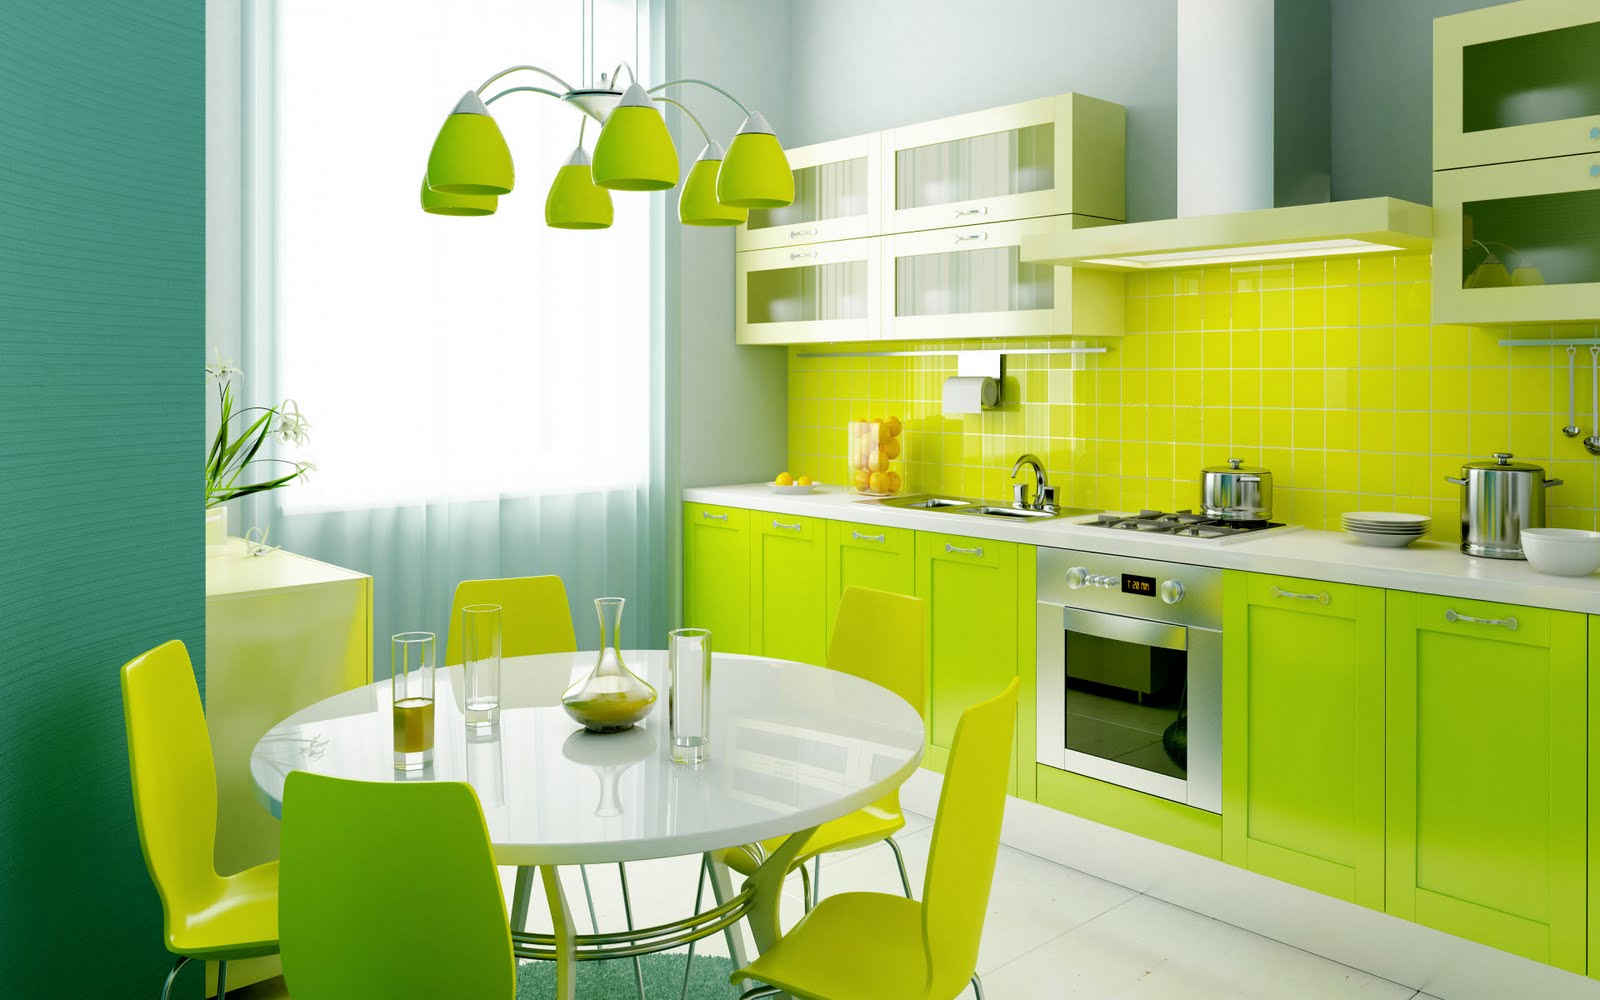 ديكورات مميزة وعصرية لتجديد غرف طعام المنزل بالوان مشرقة